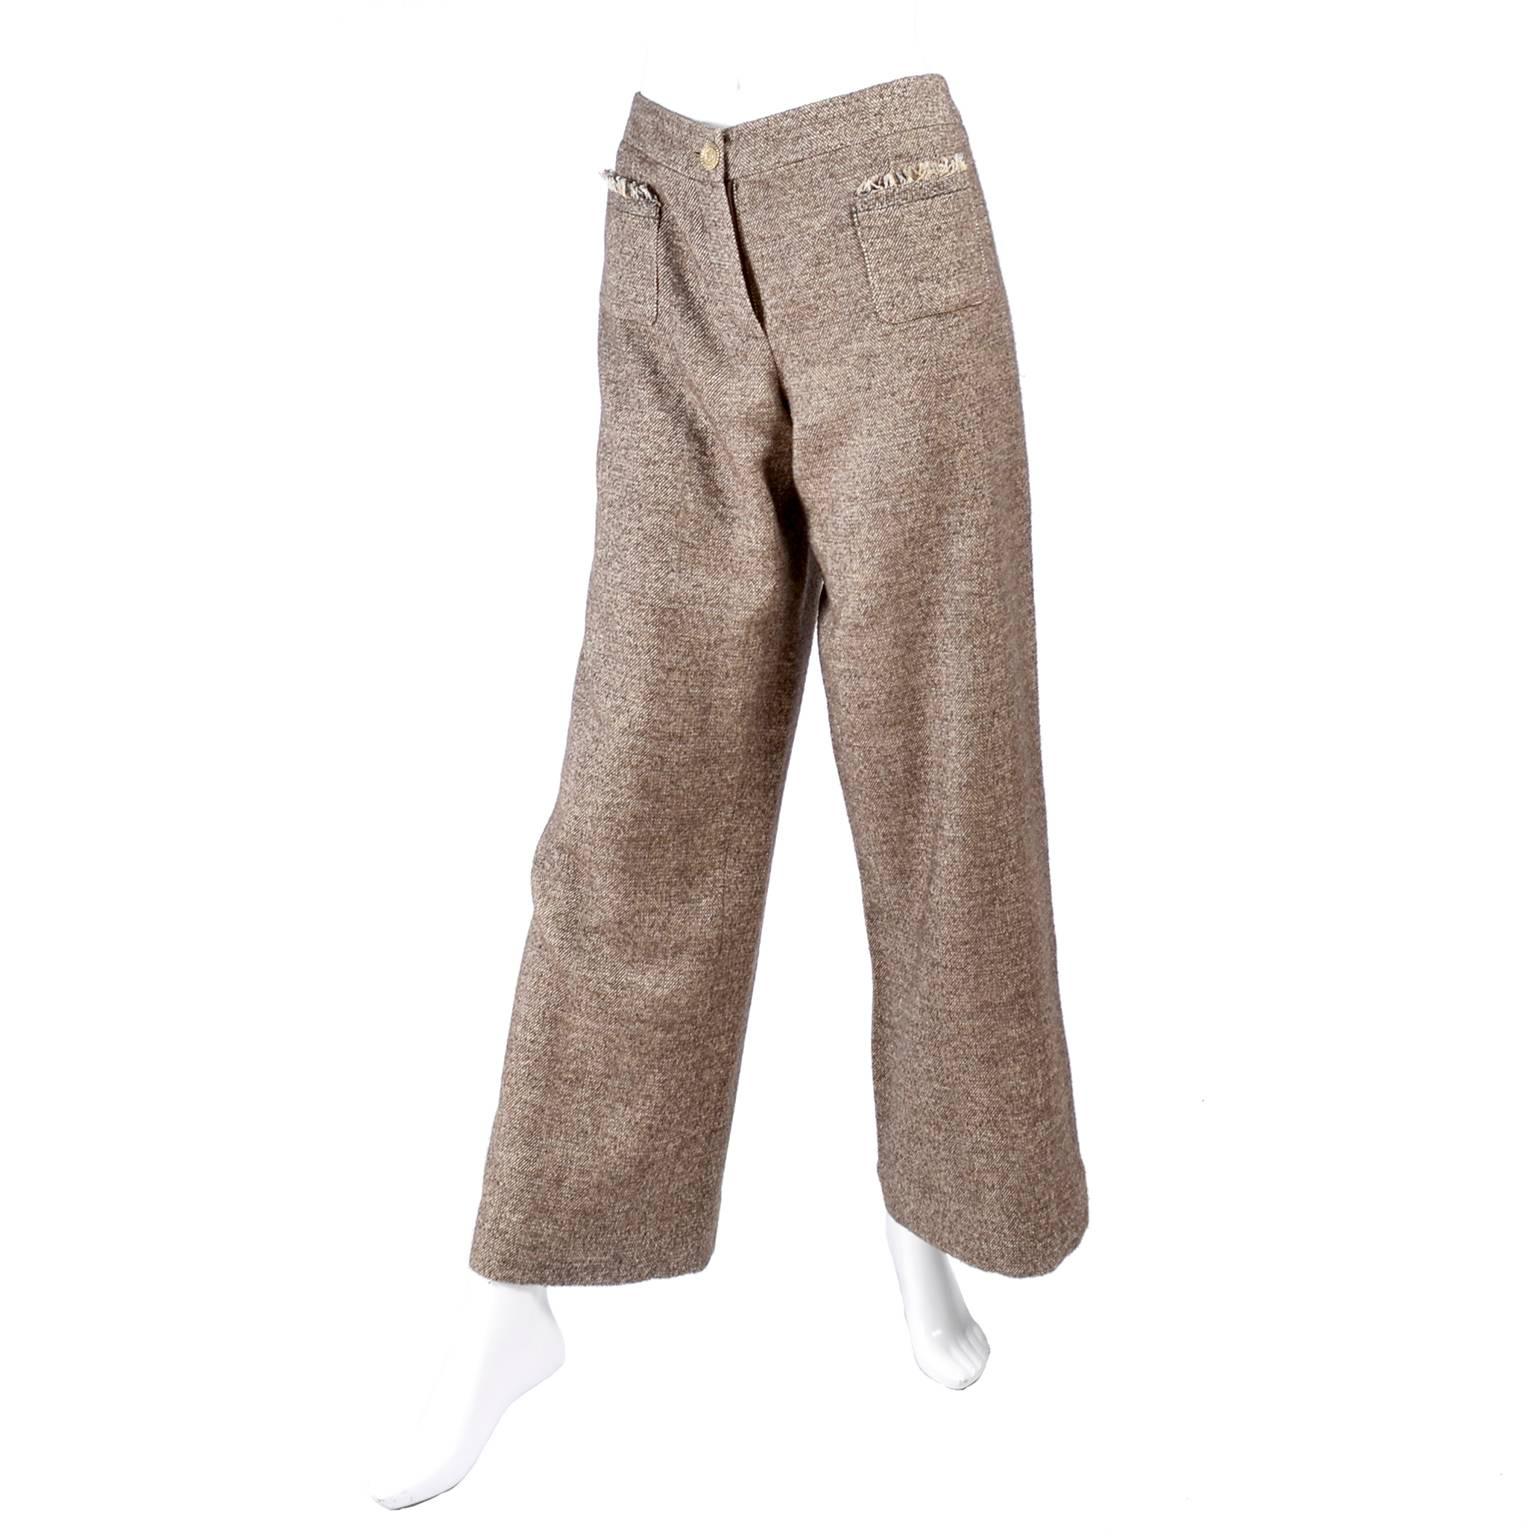 Chanel Jacket & Pants Suit From Autumn 2005 in Silk Alpaca Wool Blend w Ruffles 3